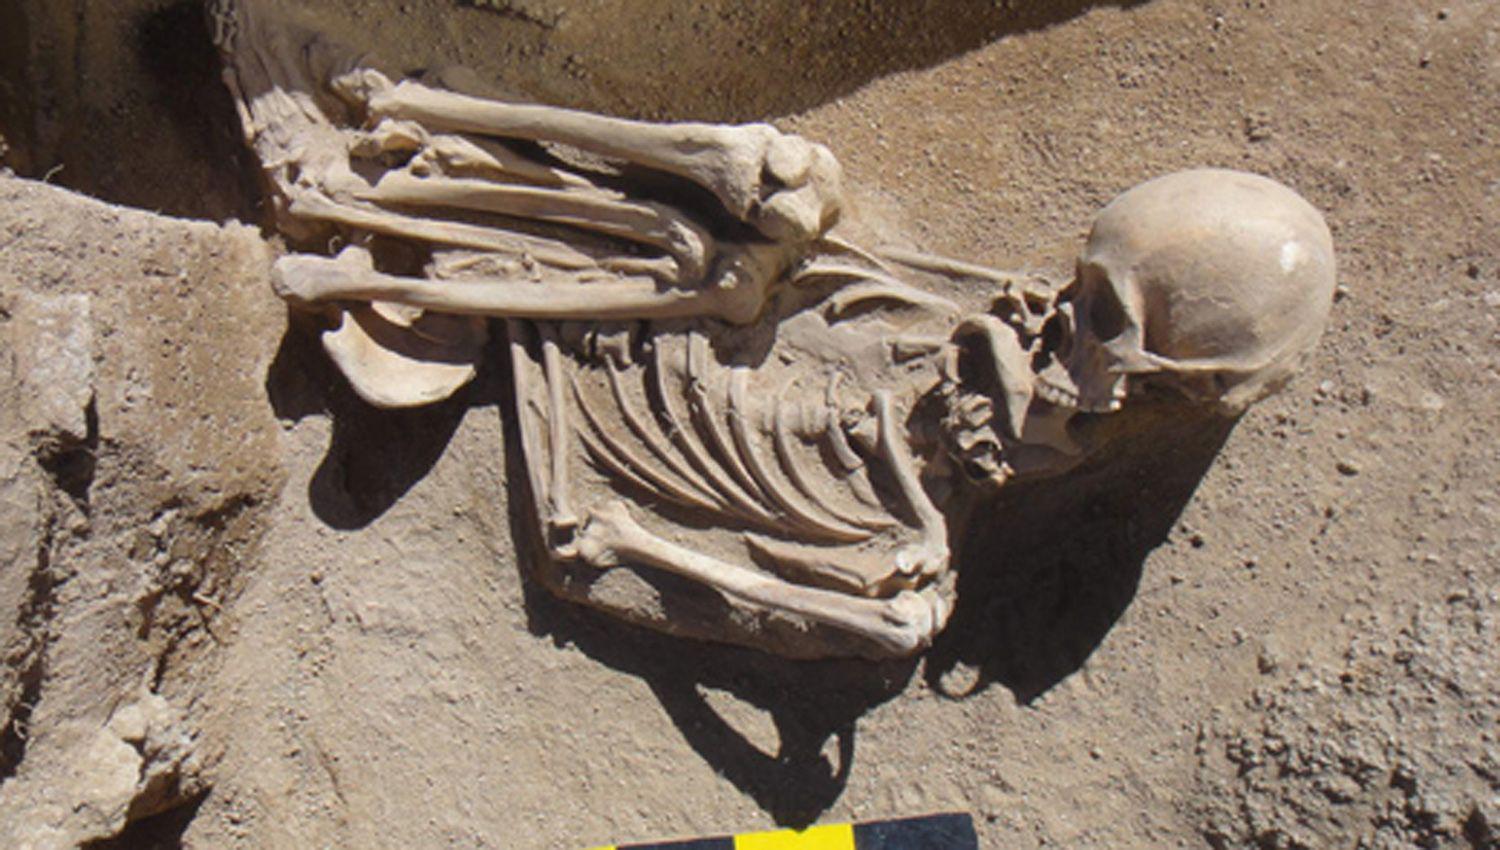 Las tumbas registradas presentan diversas cronologías
desde los 6000 años antes del presente hasta unos 1300